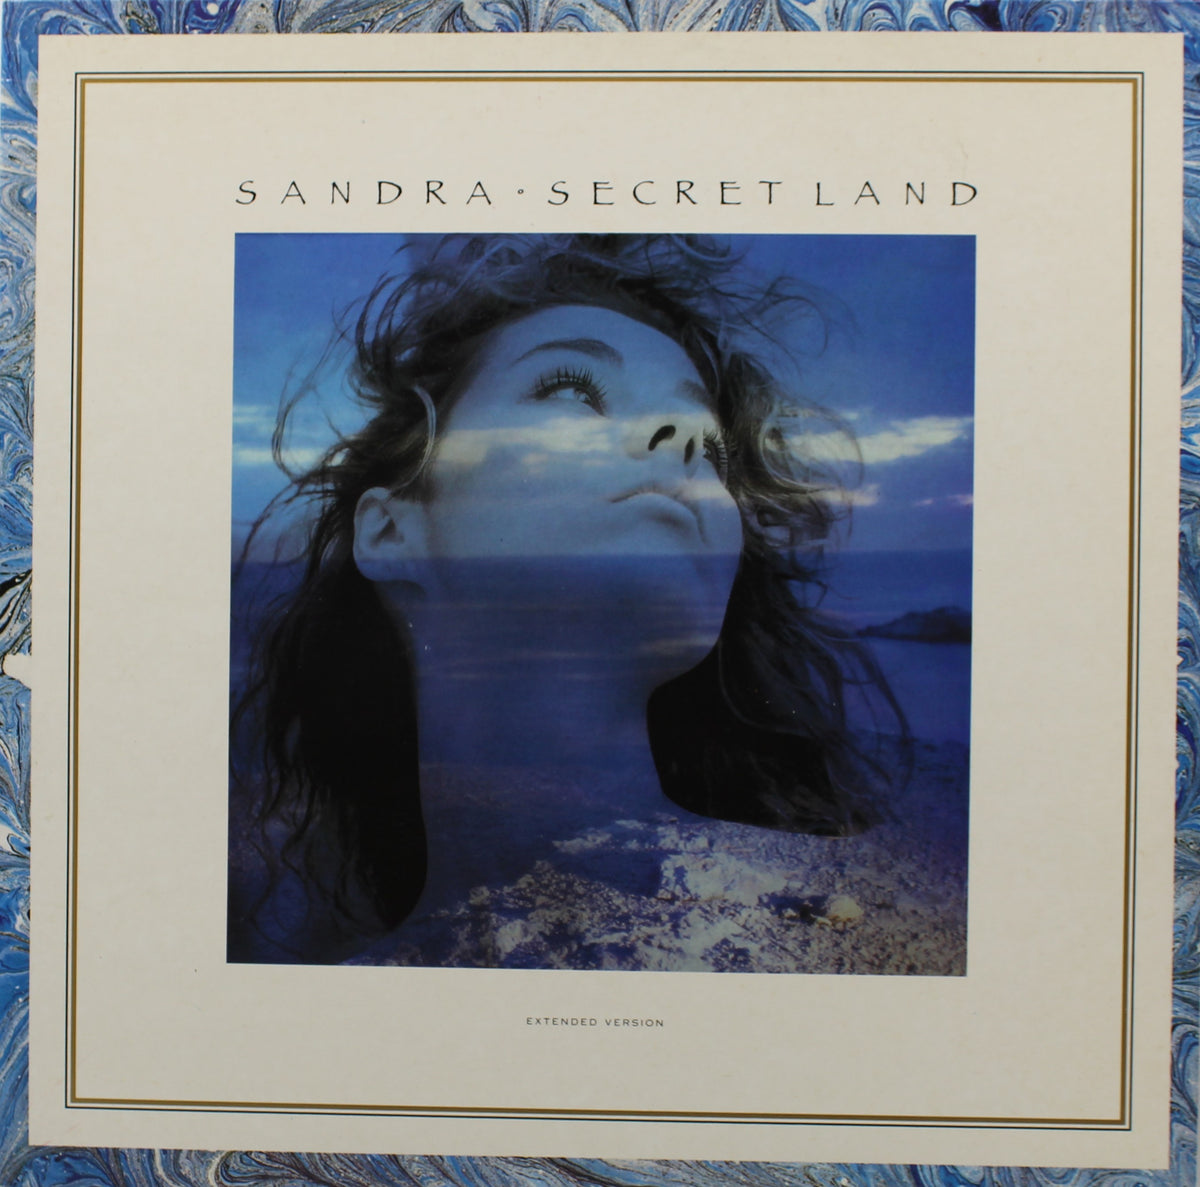 Sandra – Secret Land, Vinyl, 12&quot;, 45 RPM, Maxi-Single, Spain 1988